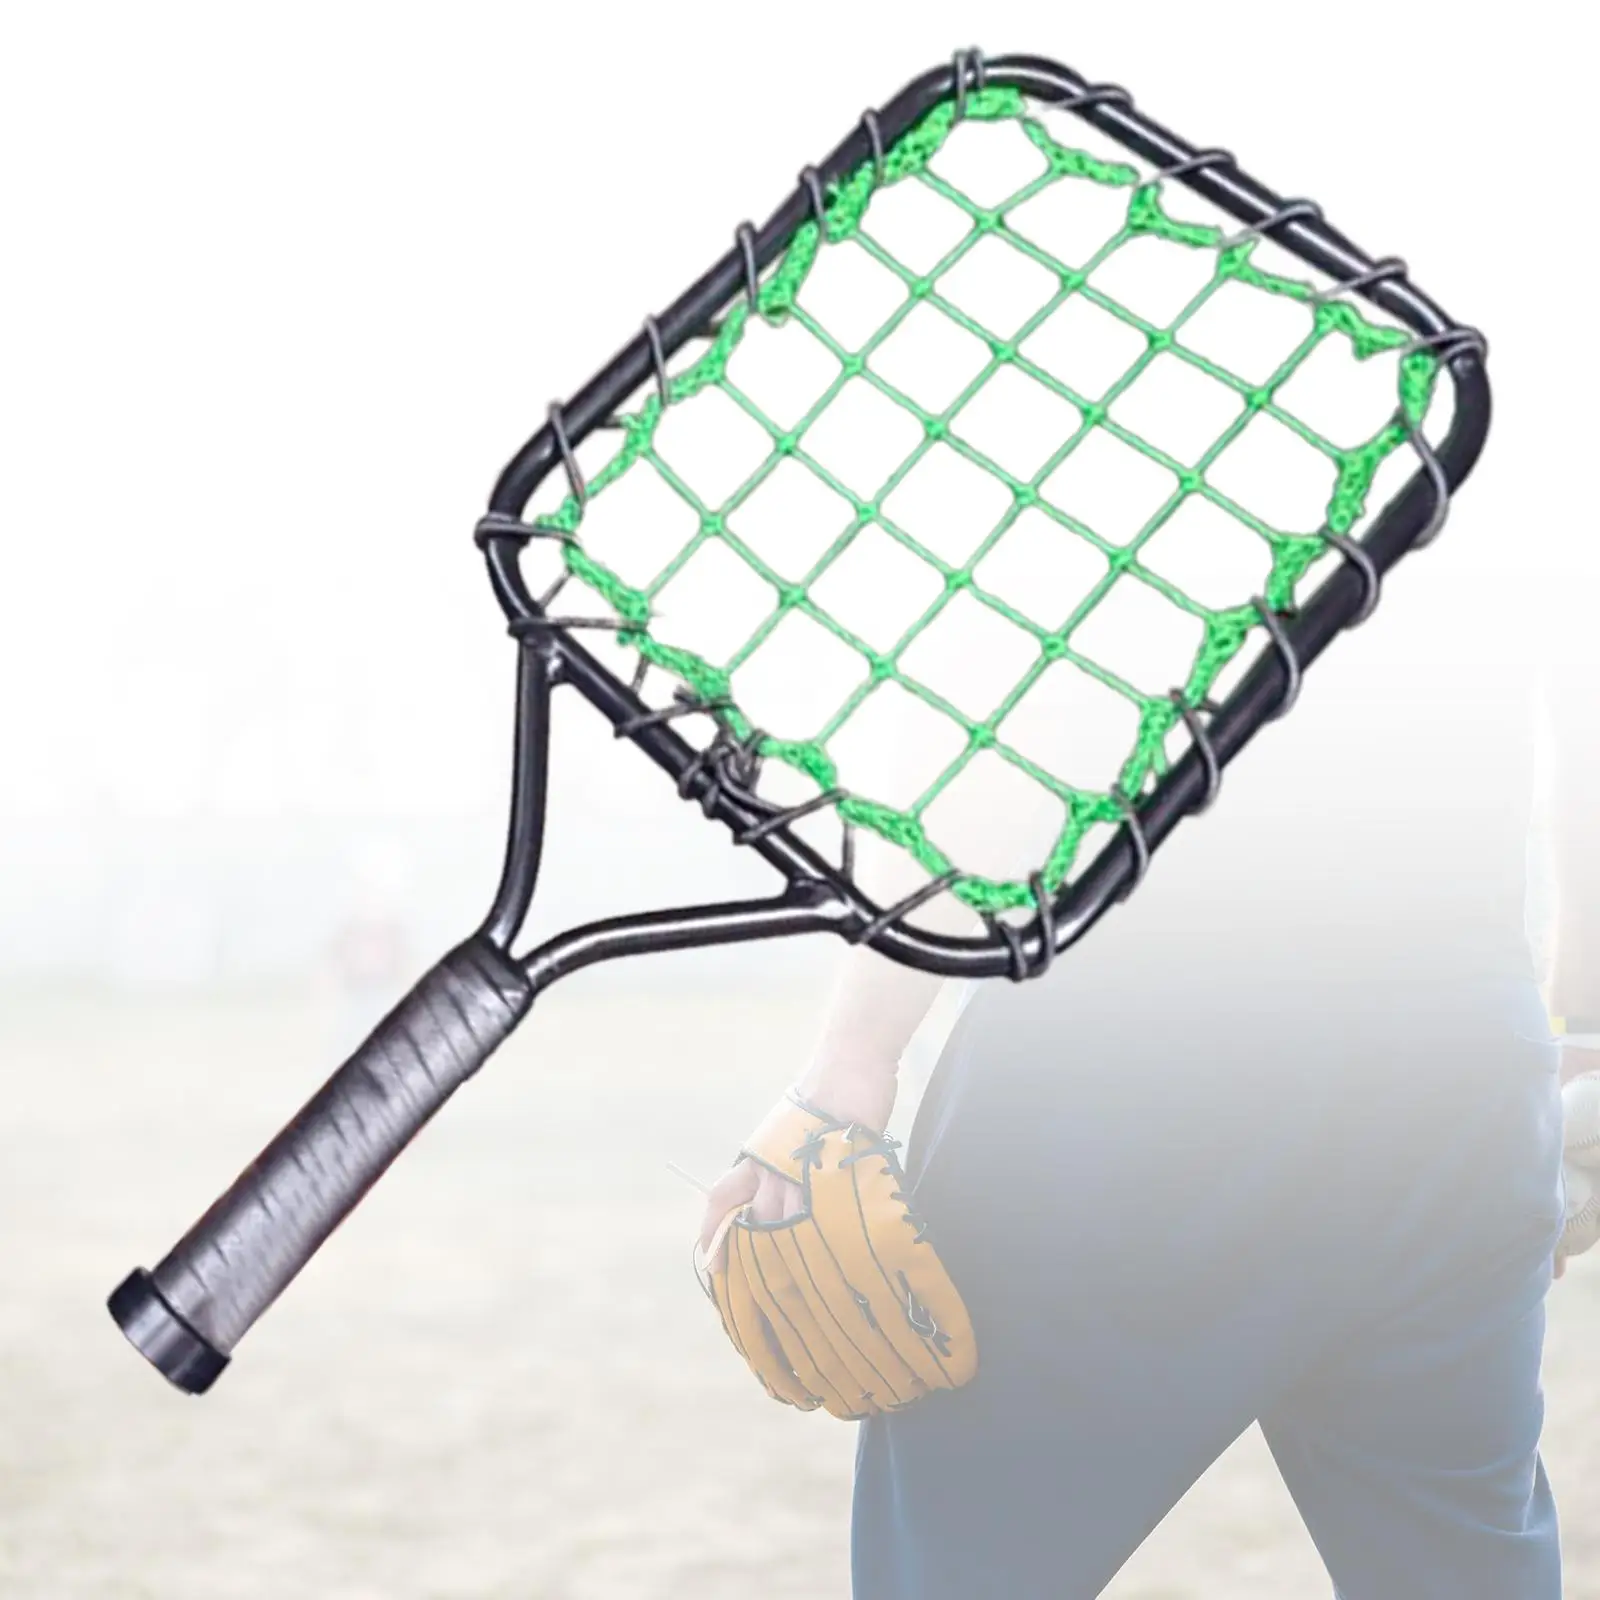 Baseball Racket Hitting Aid for Men Women Baseball Training Device for Hitting Grounders Baseball Essentials